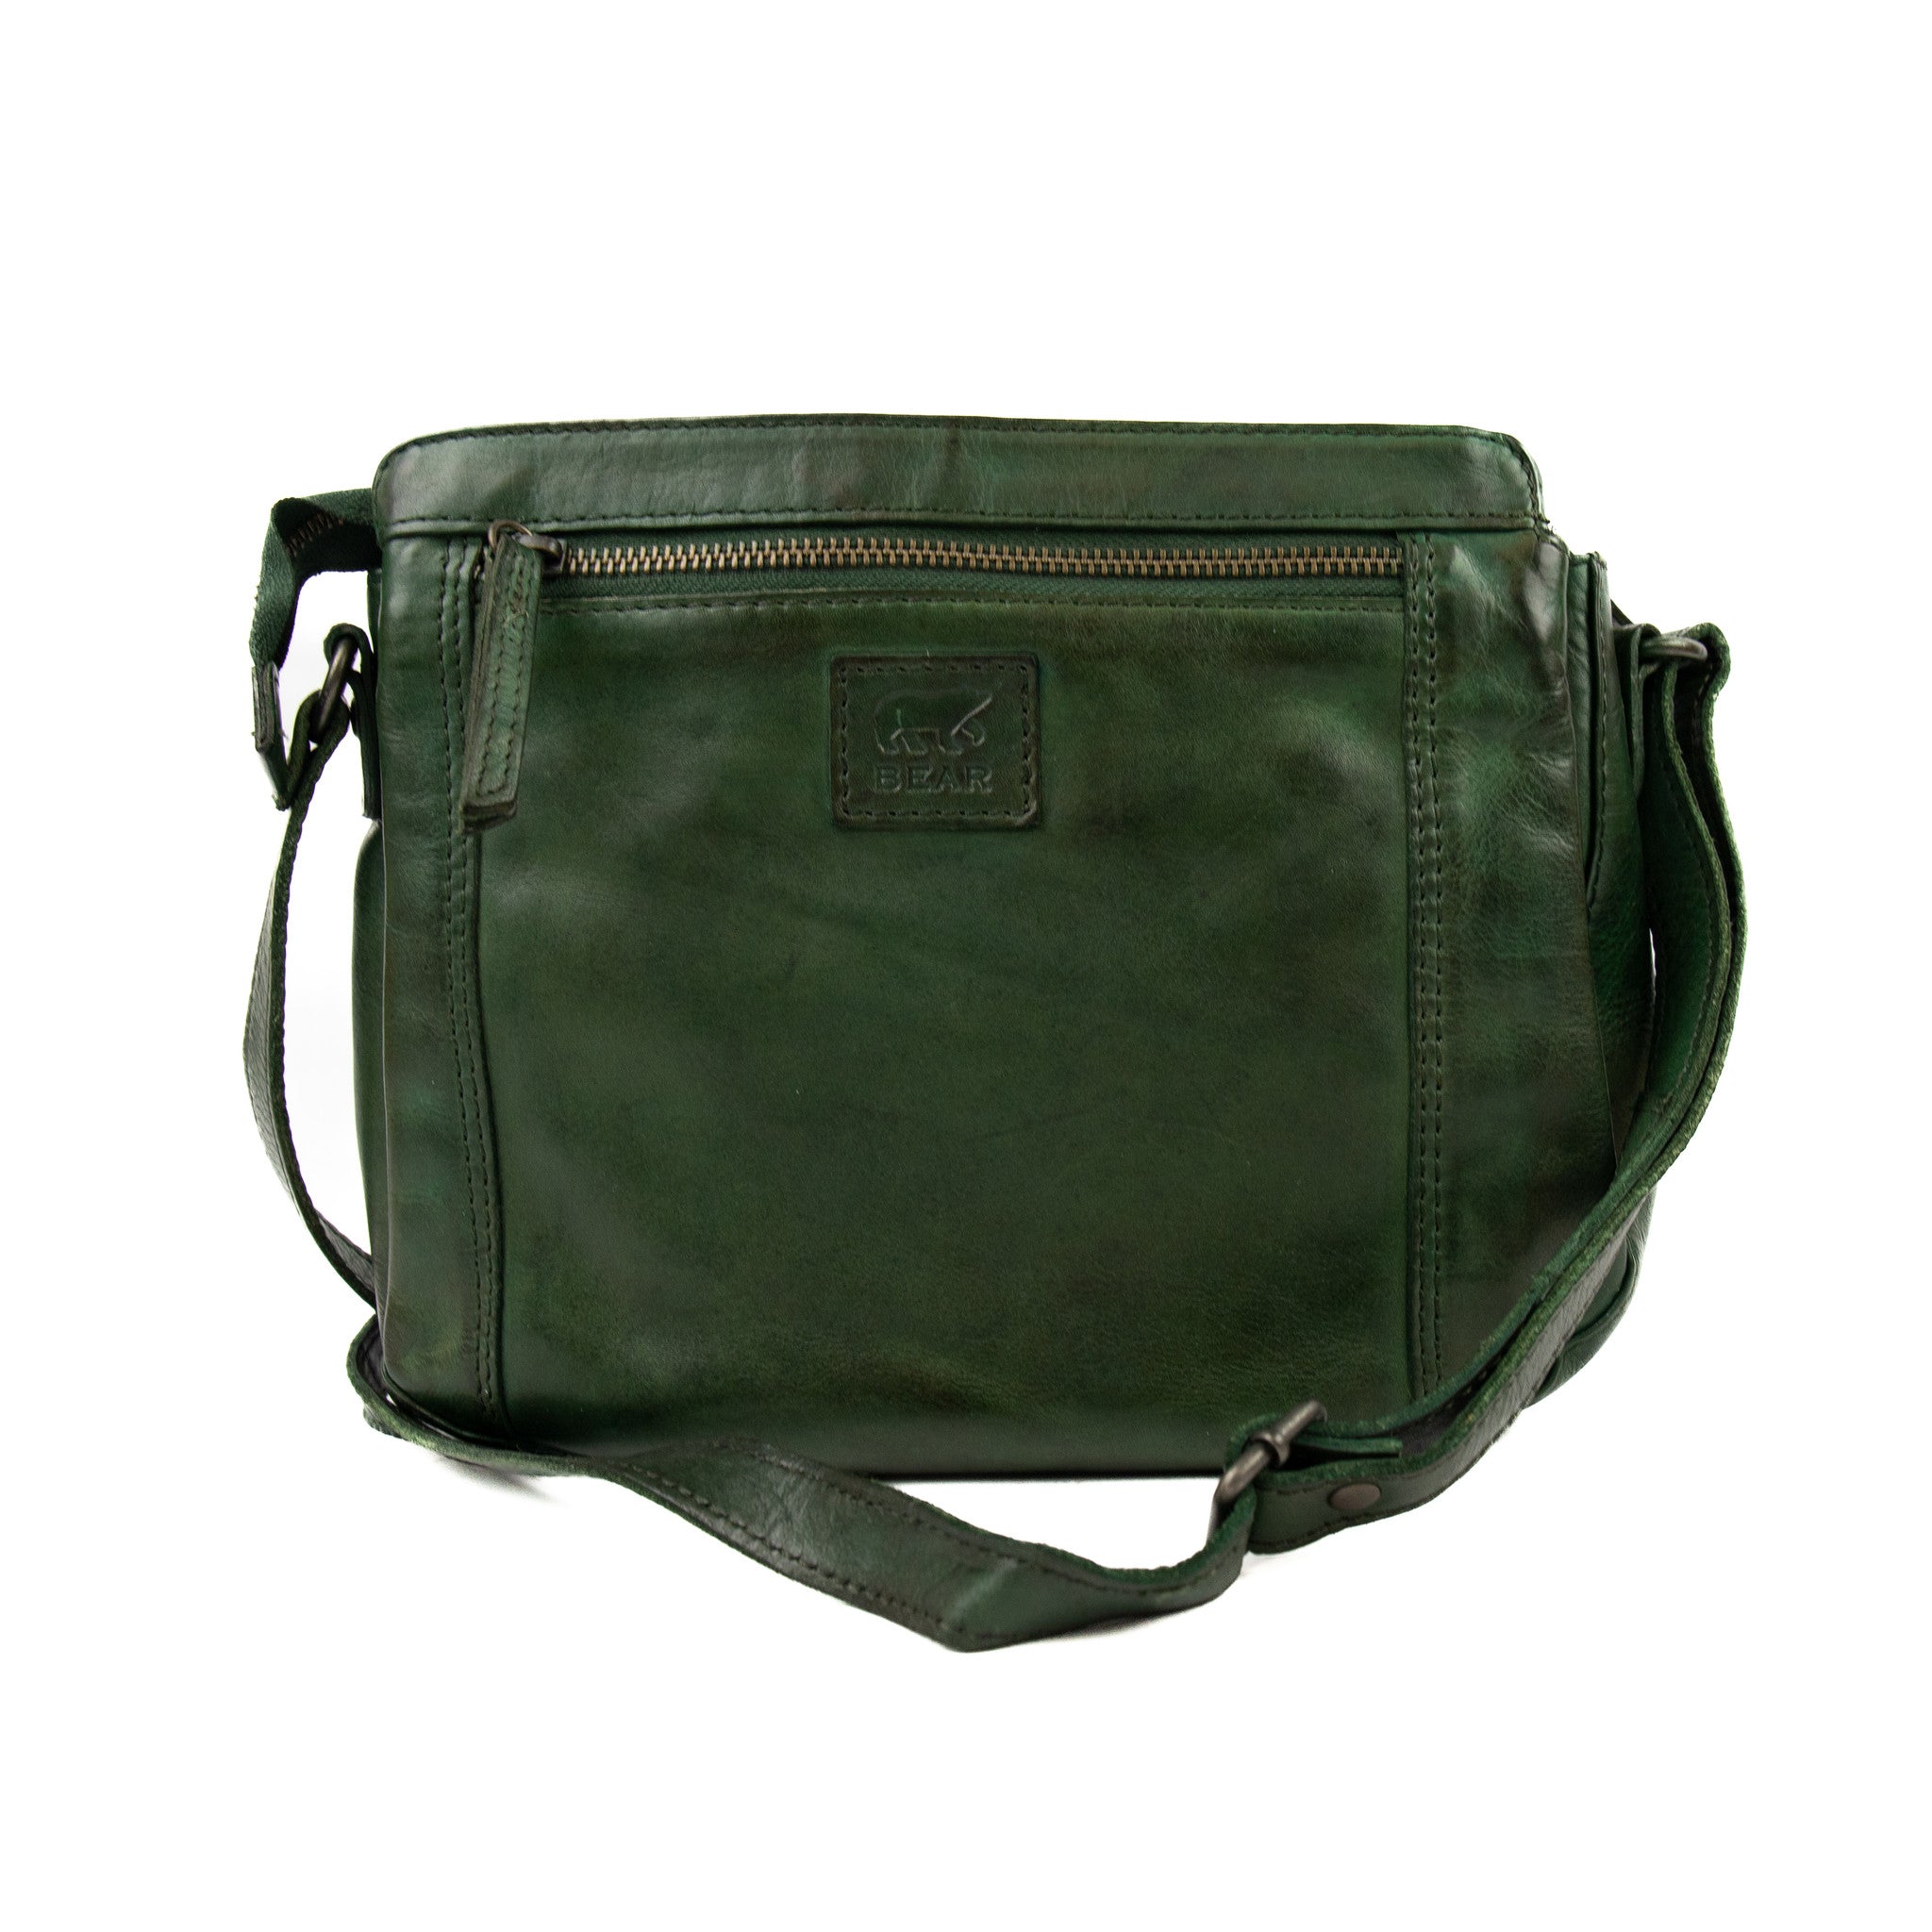 Shoulder bag 'Miley' green - CL 41707